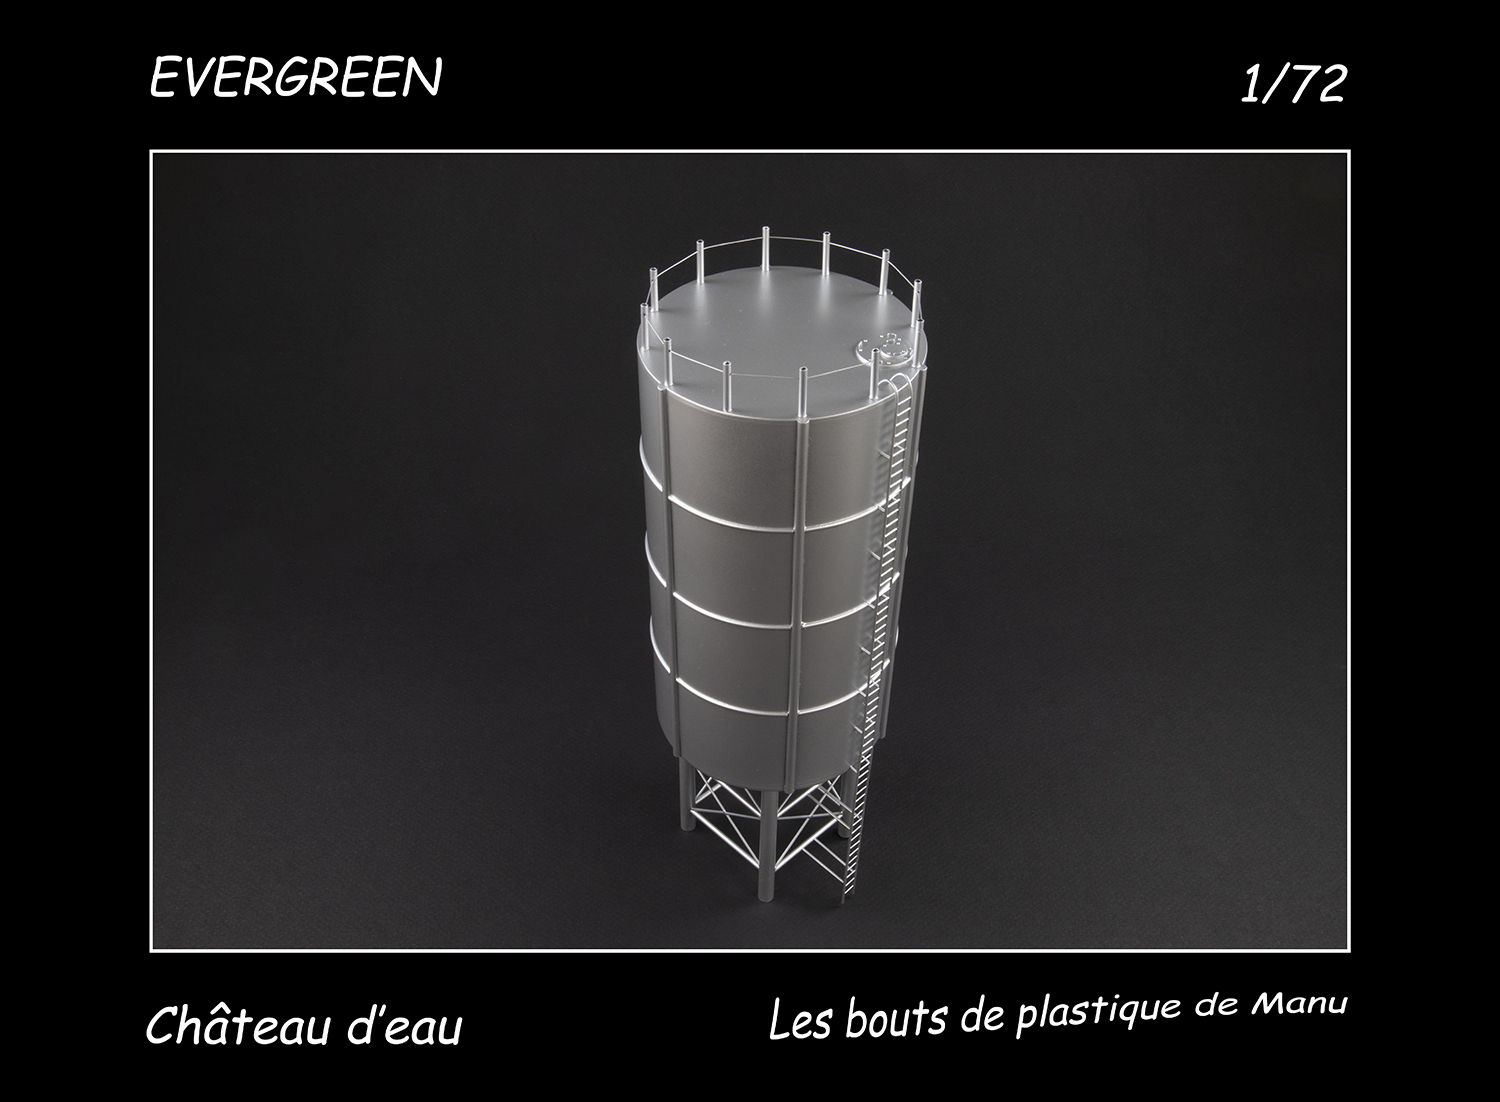 [Evergreen] Château d'eau - Le meilleur reste à venir 452g